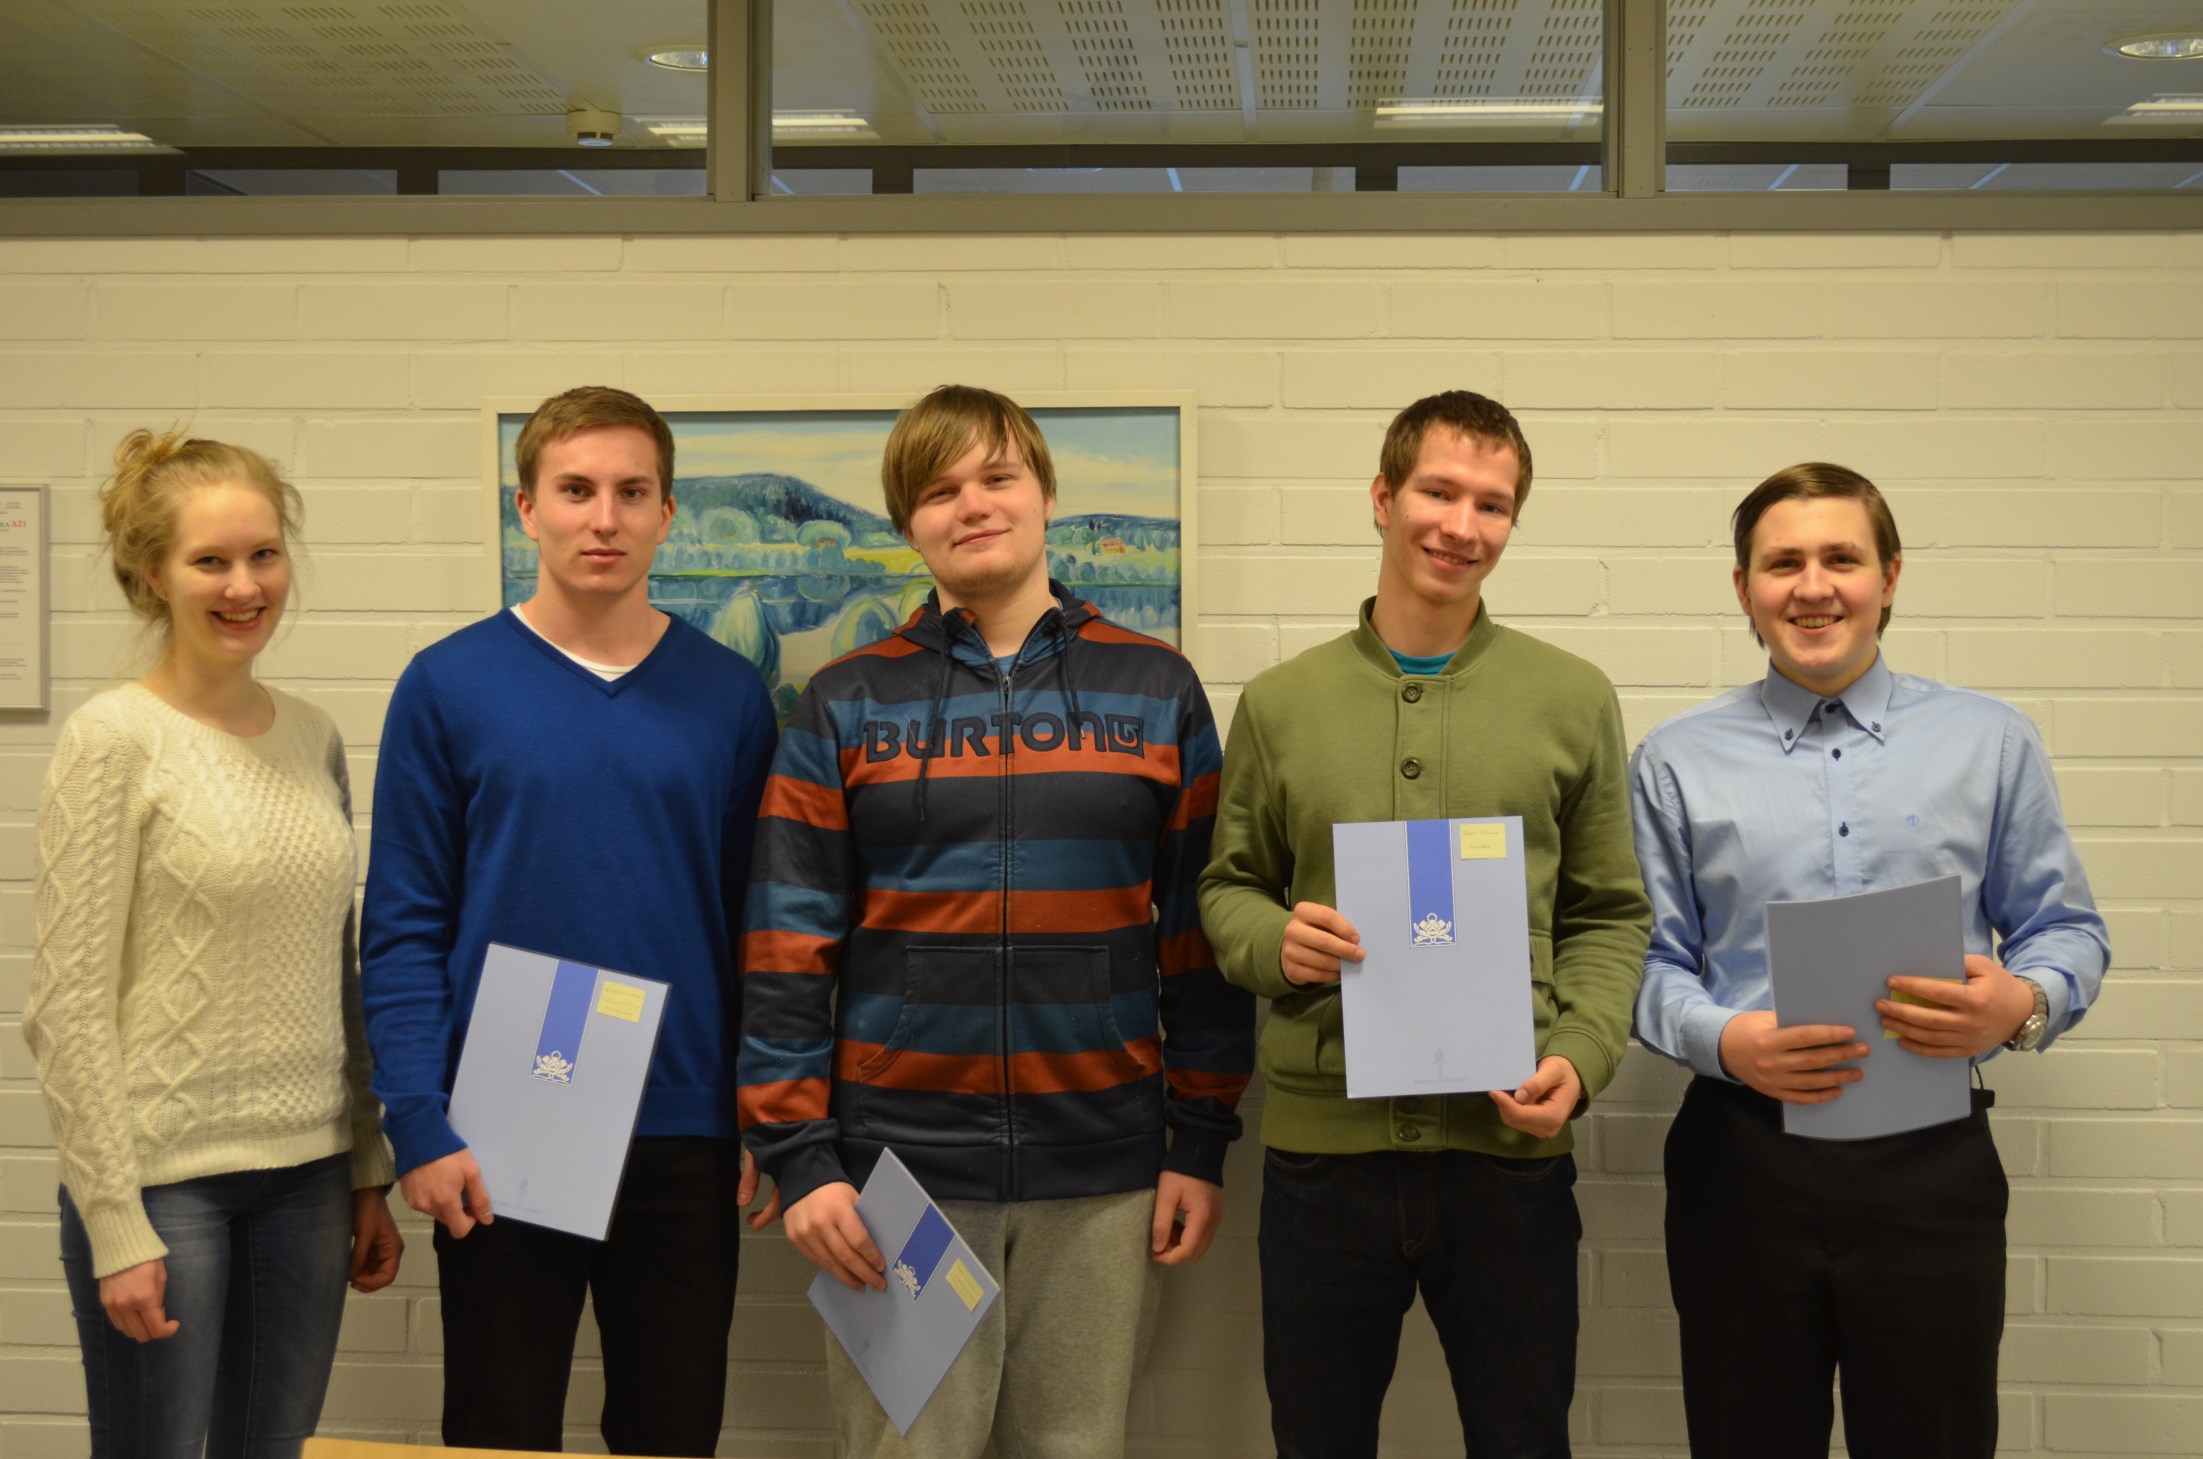 Lukiolaisia osallistui Jyväskylän yliopiston Keski-Suomen ja lähialueiden lukioille järjestettyyn matematiikan, fysiikan, kemian ja